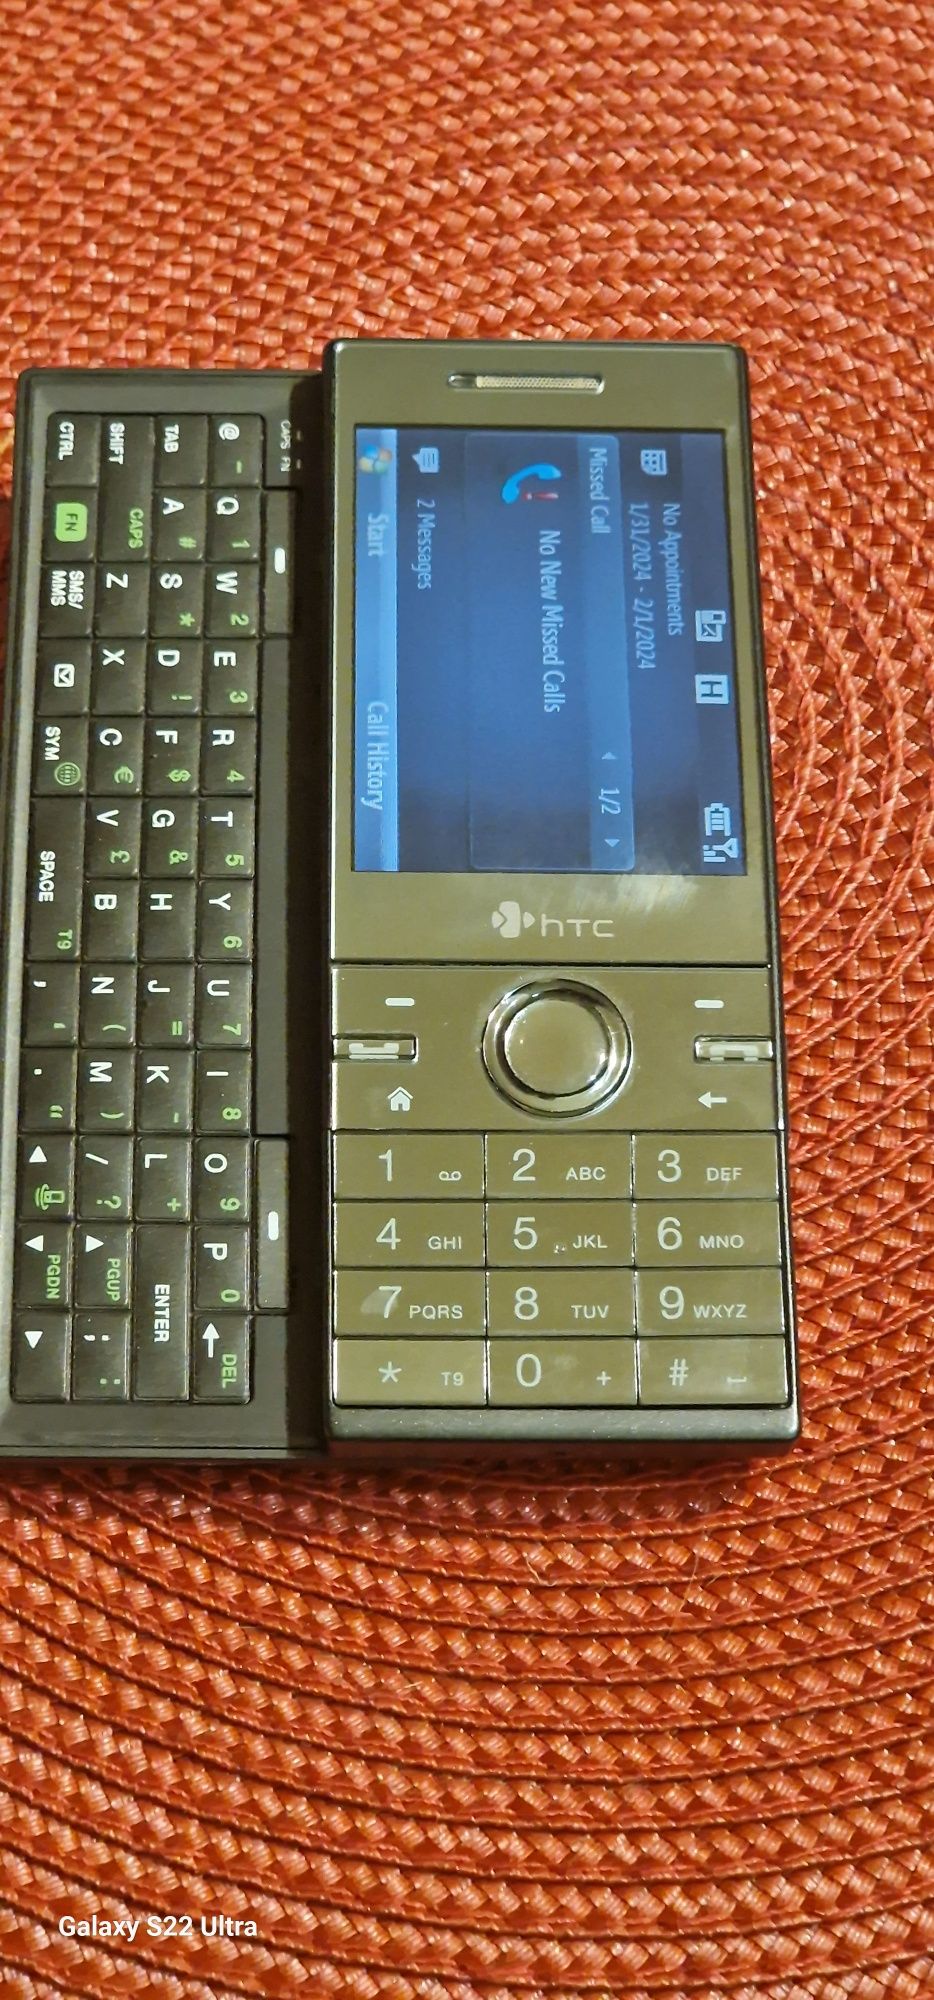 Рядък модел телефон HTC Toich Diamond S740.За ценители и колекционери